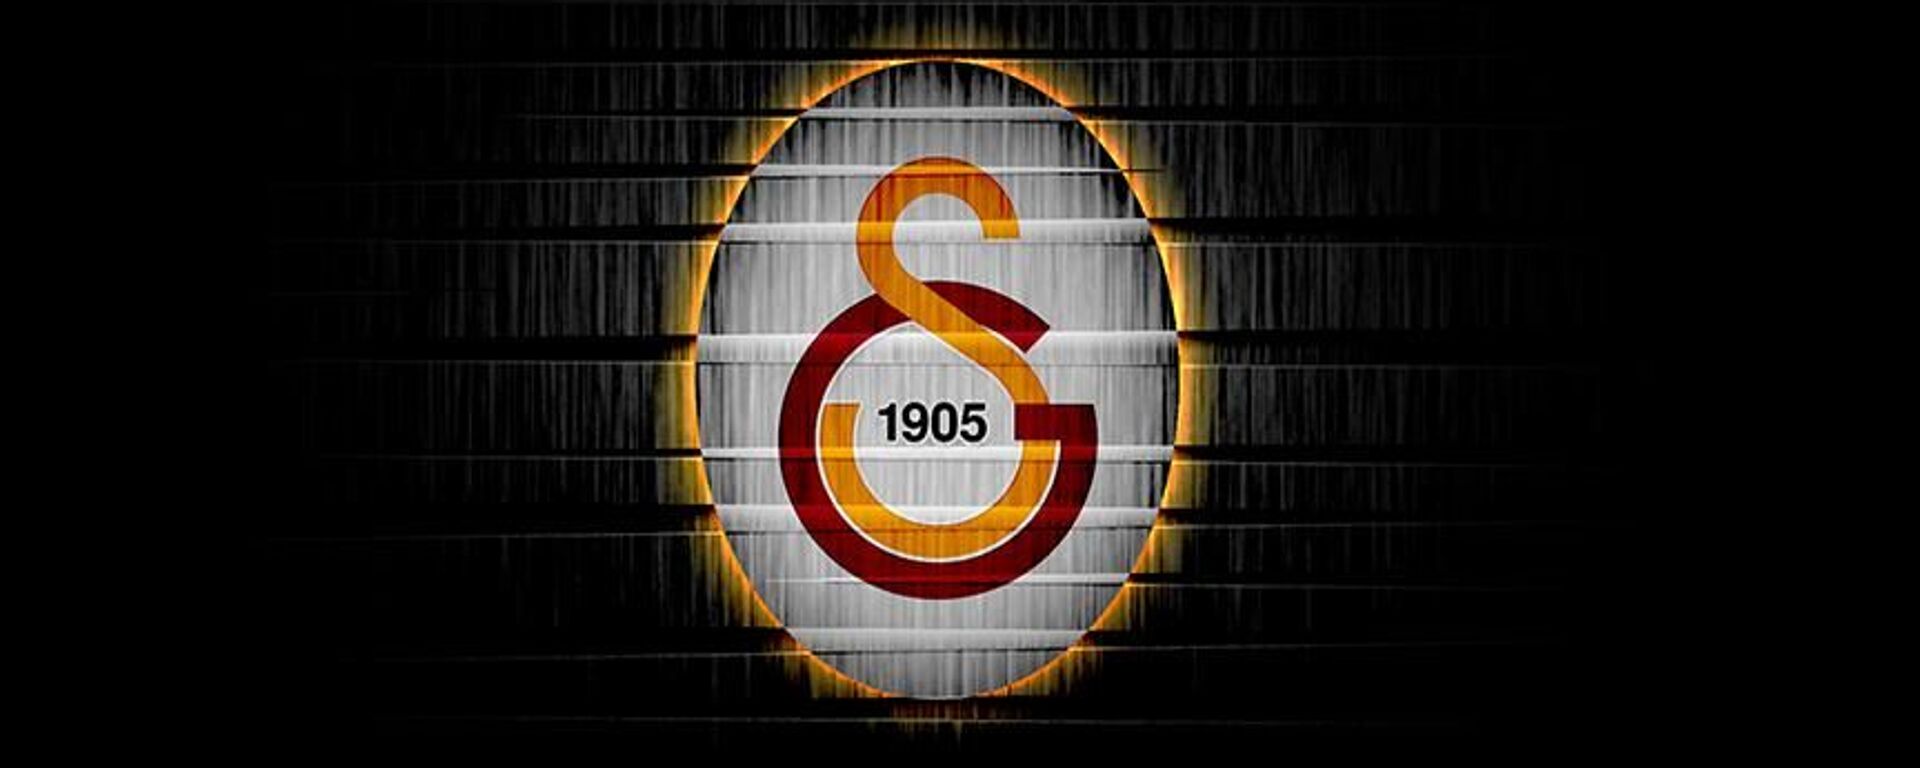 Galatasaray, logo - Sputnik Türkiye, 1920, 23.06.2021